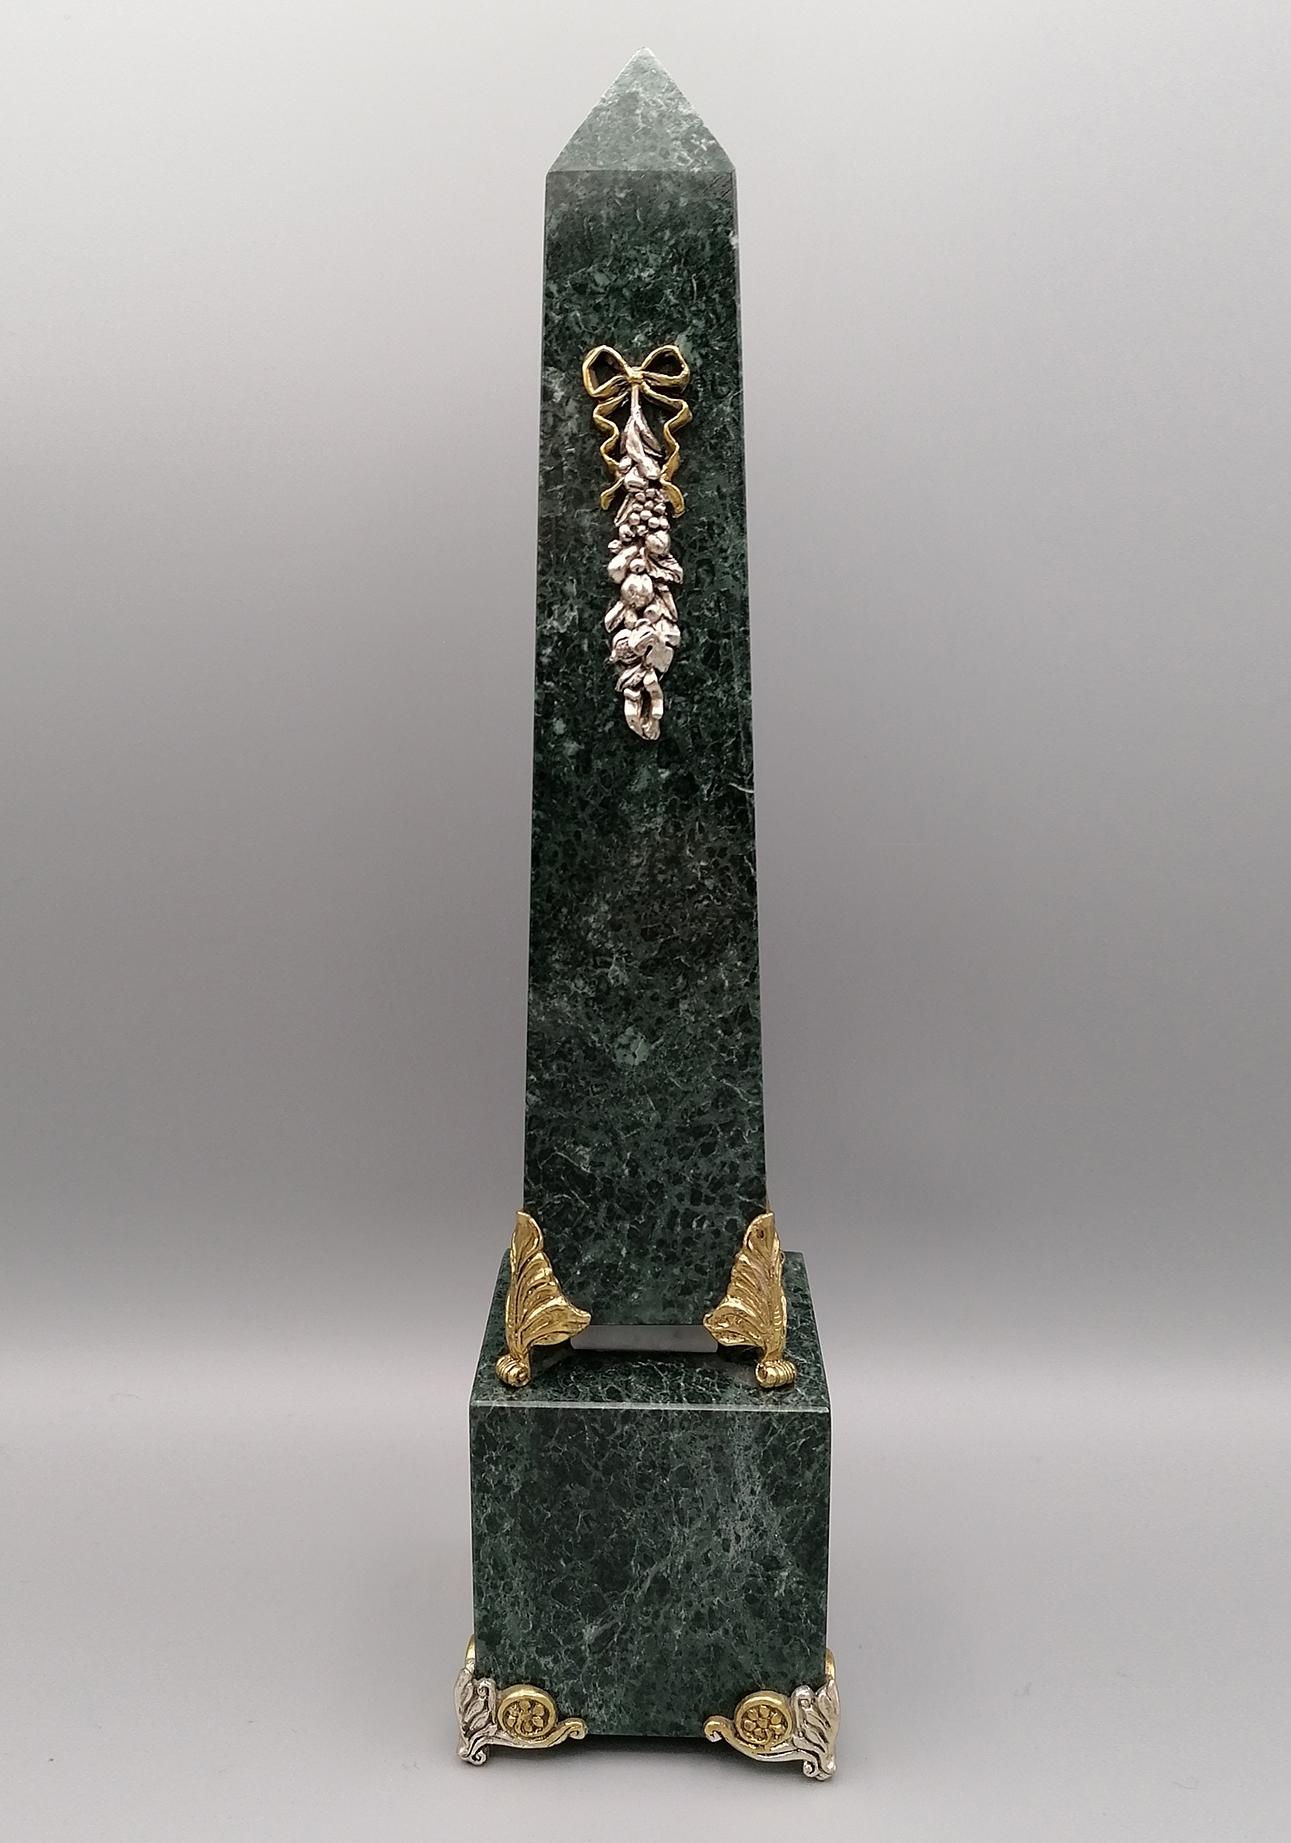 Obelisk aus grünem Marmor mit Friesen aus Sterlingsilber.
Der Fries des Obelisken zeigt eine Komposition von Früchten mit einem Liebesknoten und steht auf einem Sockel, ebenfalls aus grünem Marmor, auf 4 Füßen aus zweifarbigem, naturfarbenem und